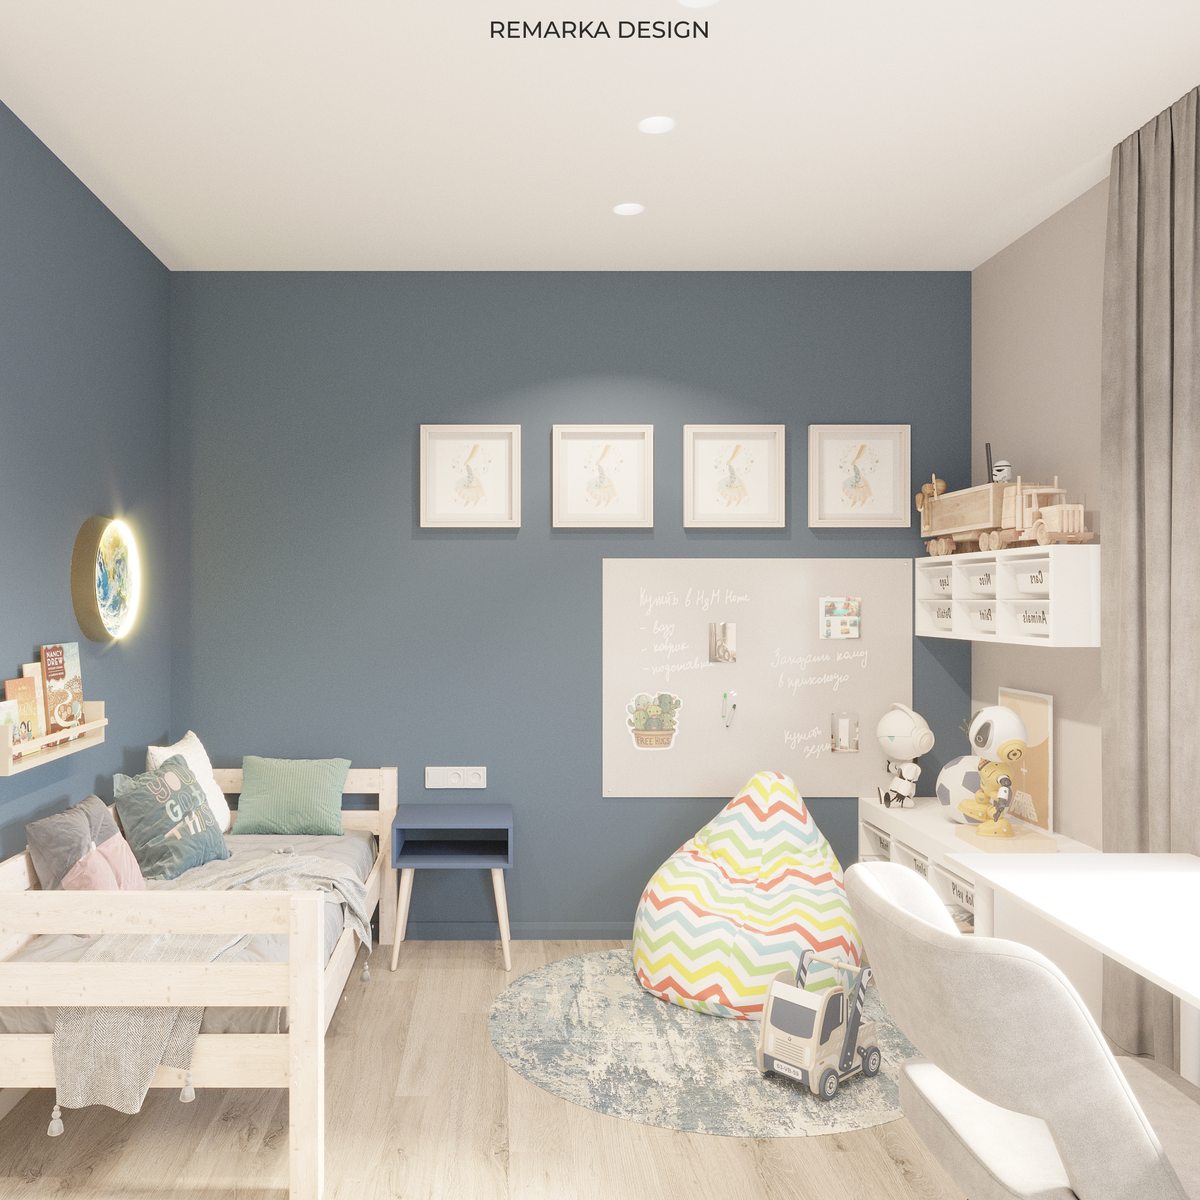 Услуги по созданию дизайн-проектов детских комнат для двух девочек в дизайн-студии VizDiz